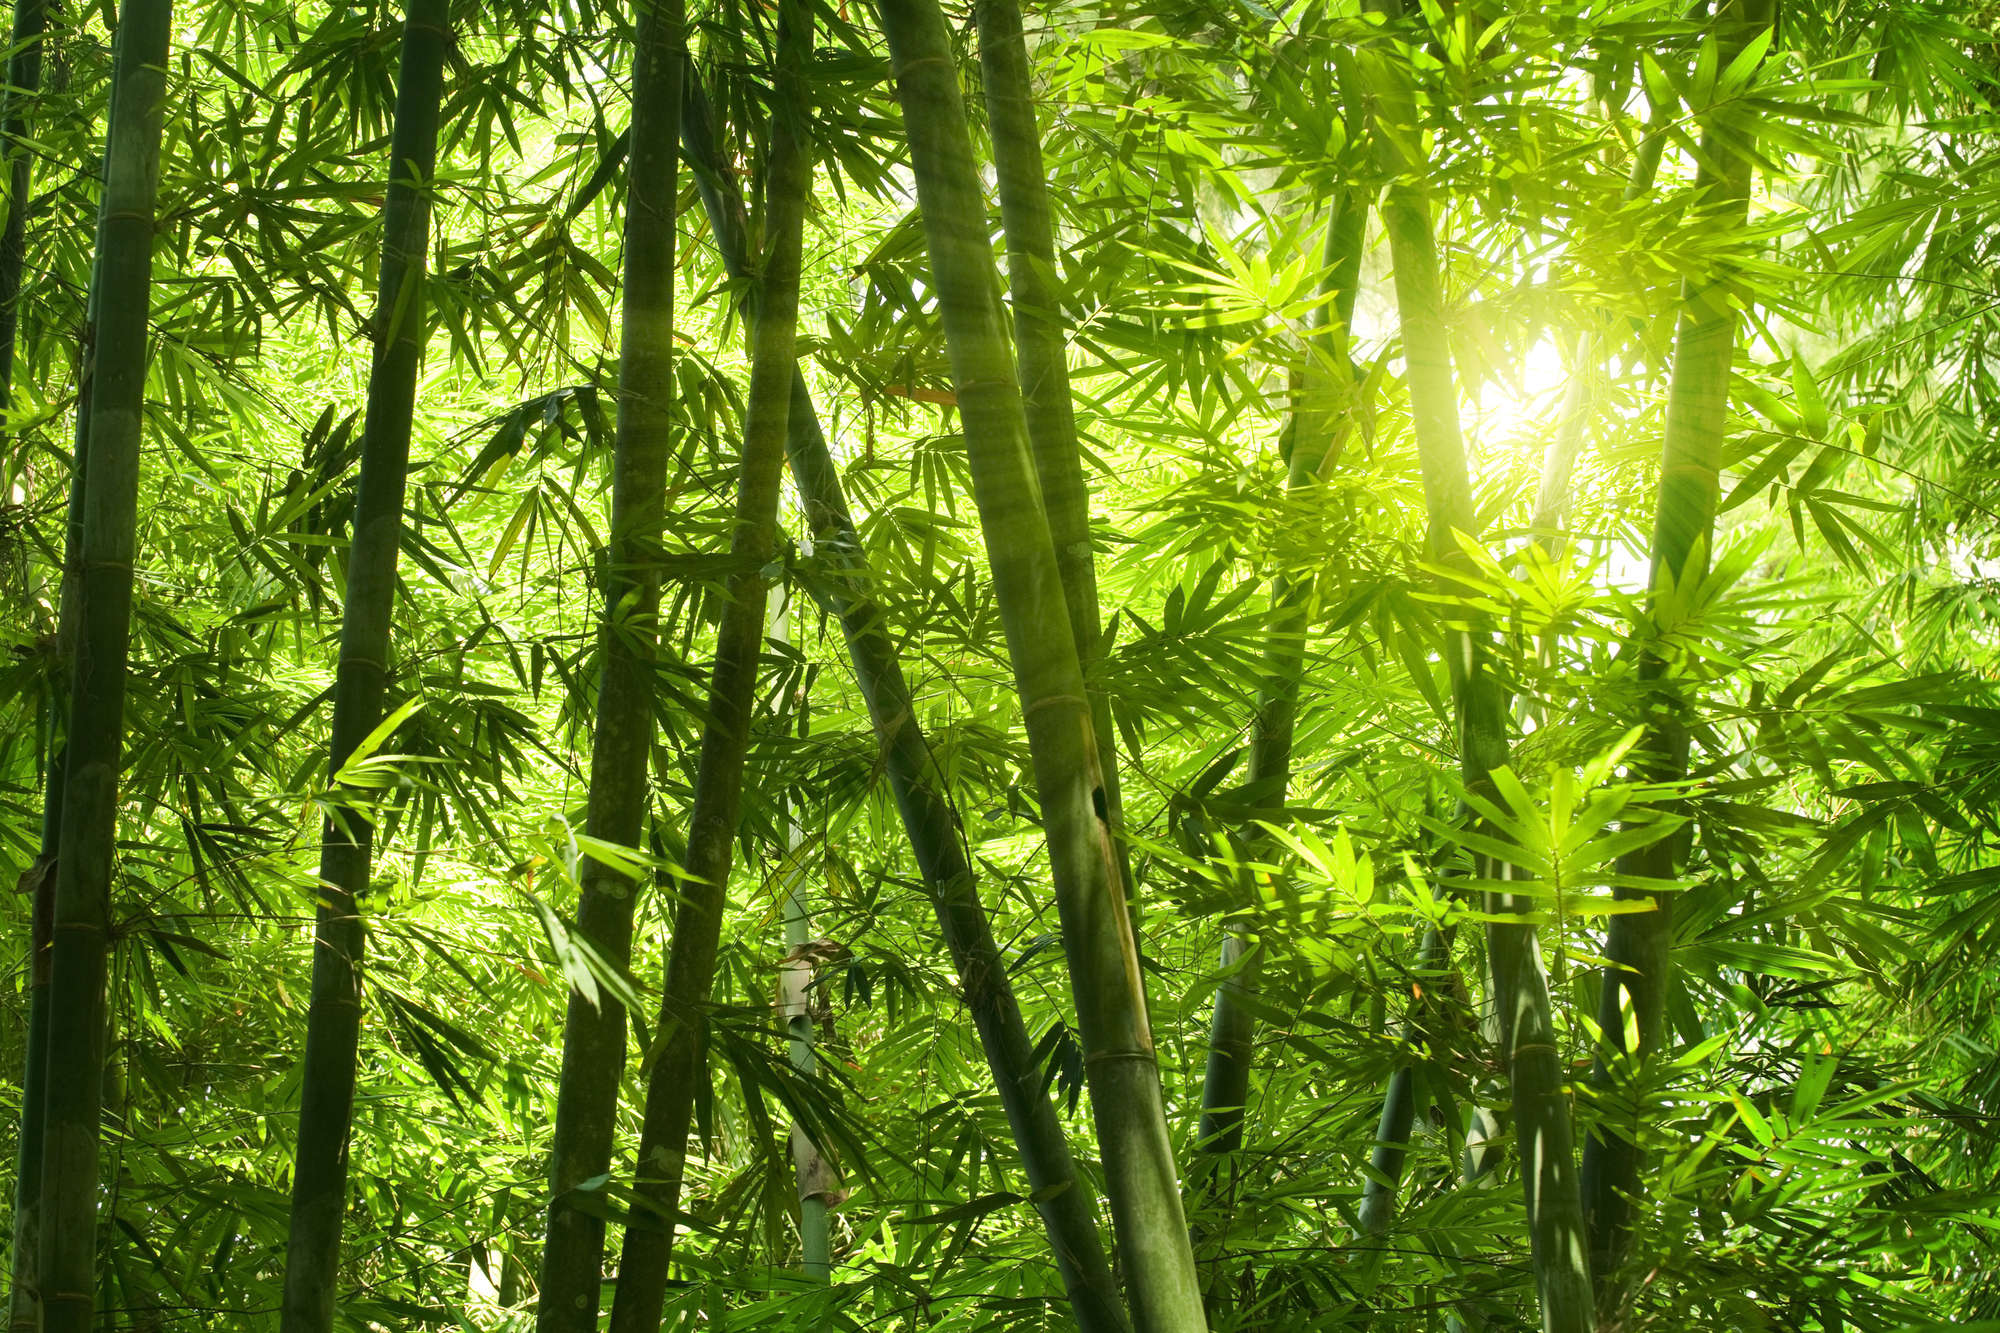             Papel pintado de naturaleza con motivo de bosque de bambú sobre tela no tejida con textura
        